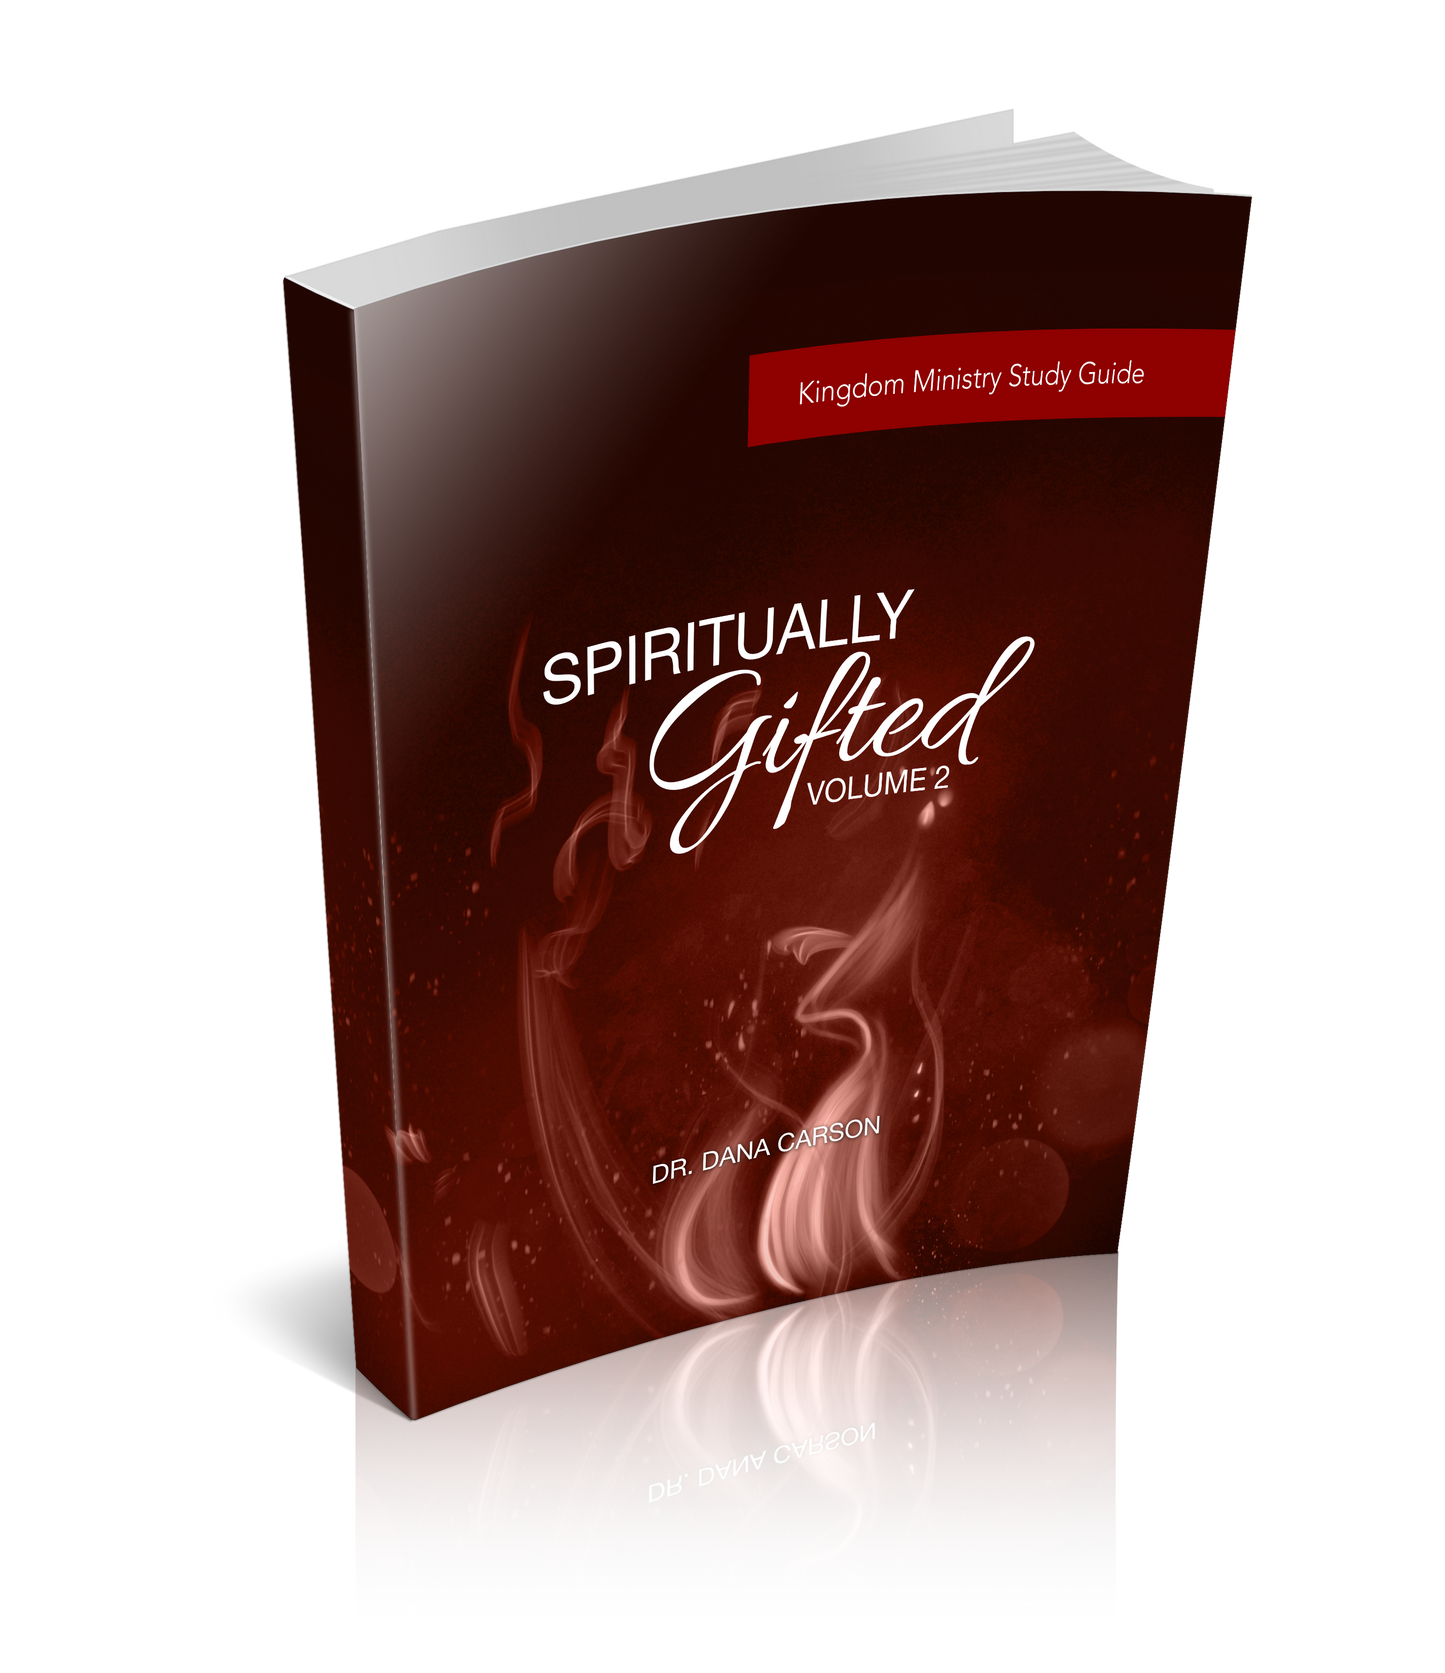 Spiritually Gifted Volume 2 Kingdom Bible Study Guide